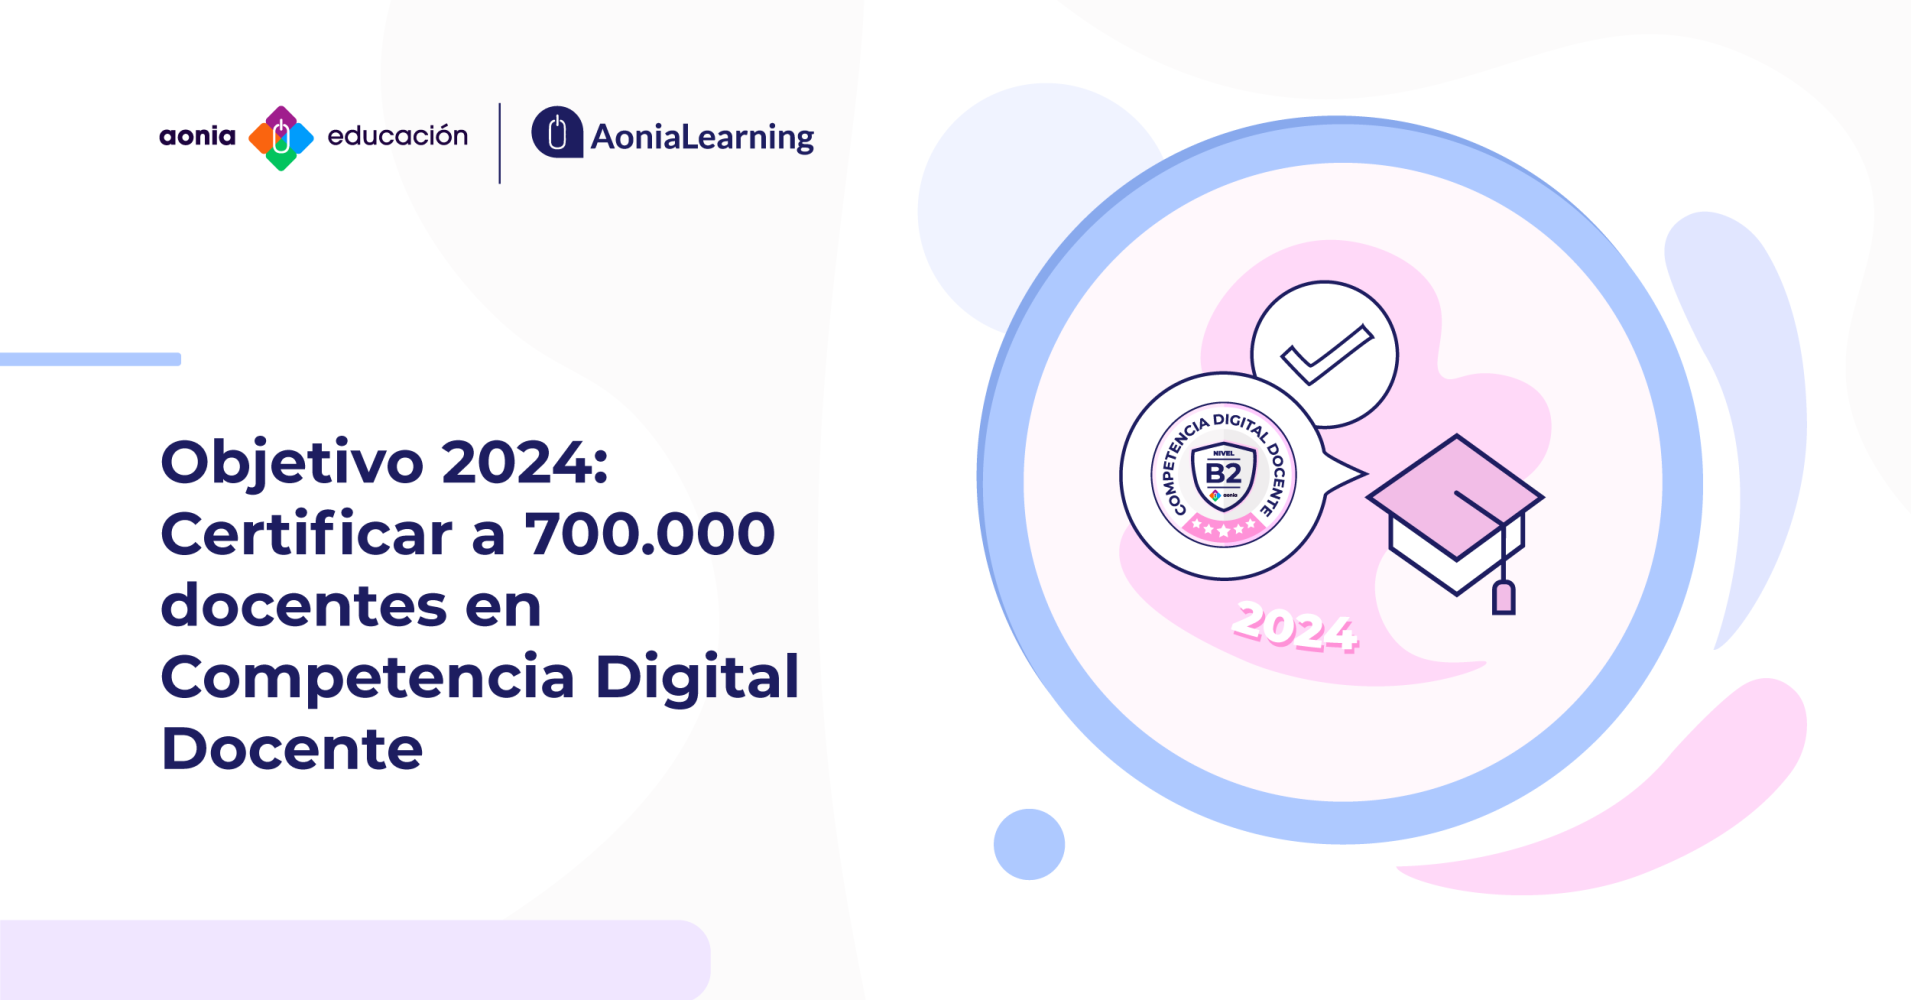 Objetivo 2024: Certificar a 700.000 docentes en Competencia Digital Docente con el MRCDD